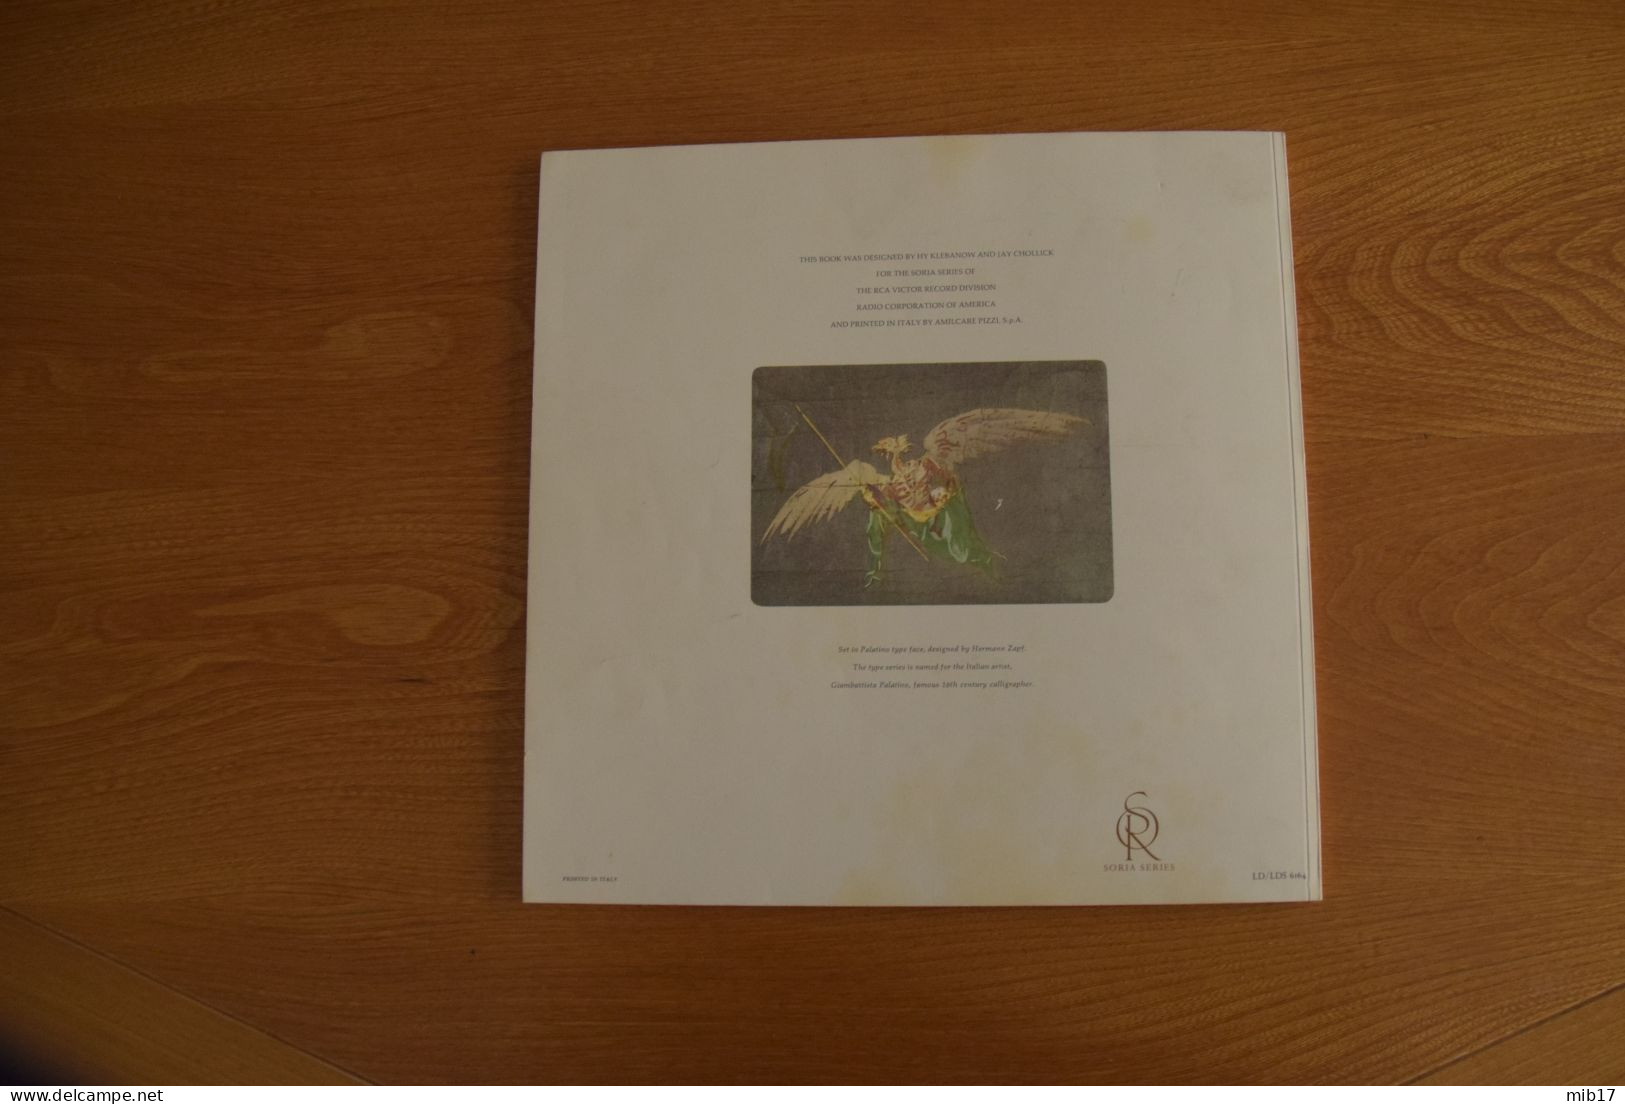 Album 3 disques RCA avec livre en Anglais, parole des actes en Français et Anglais- Carmen VON KARAJAN